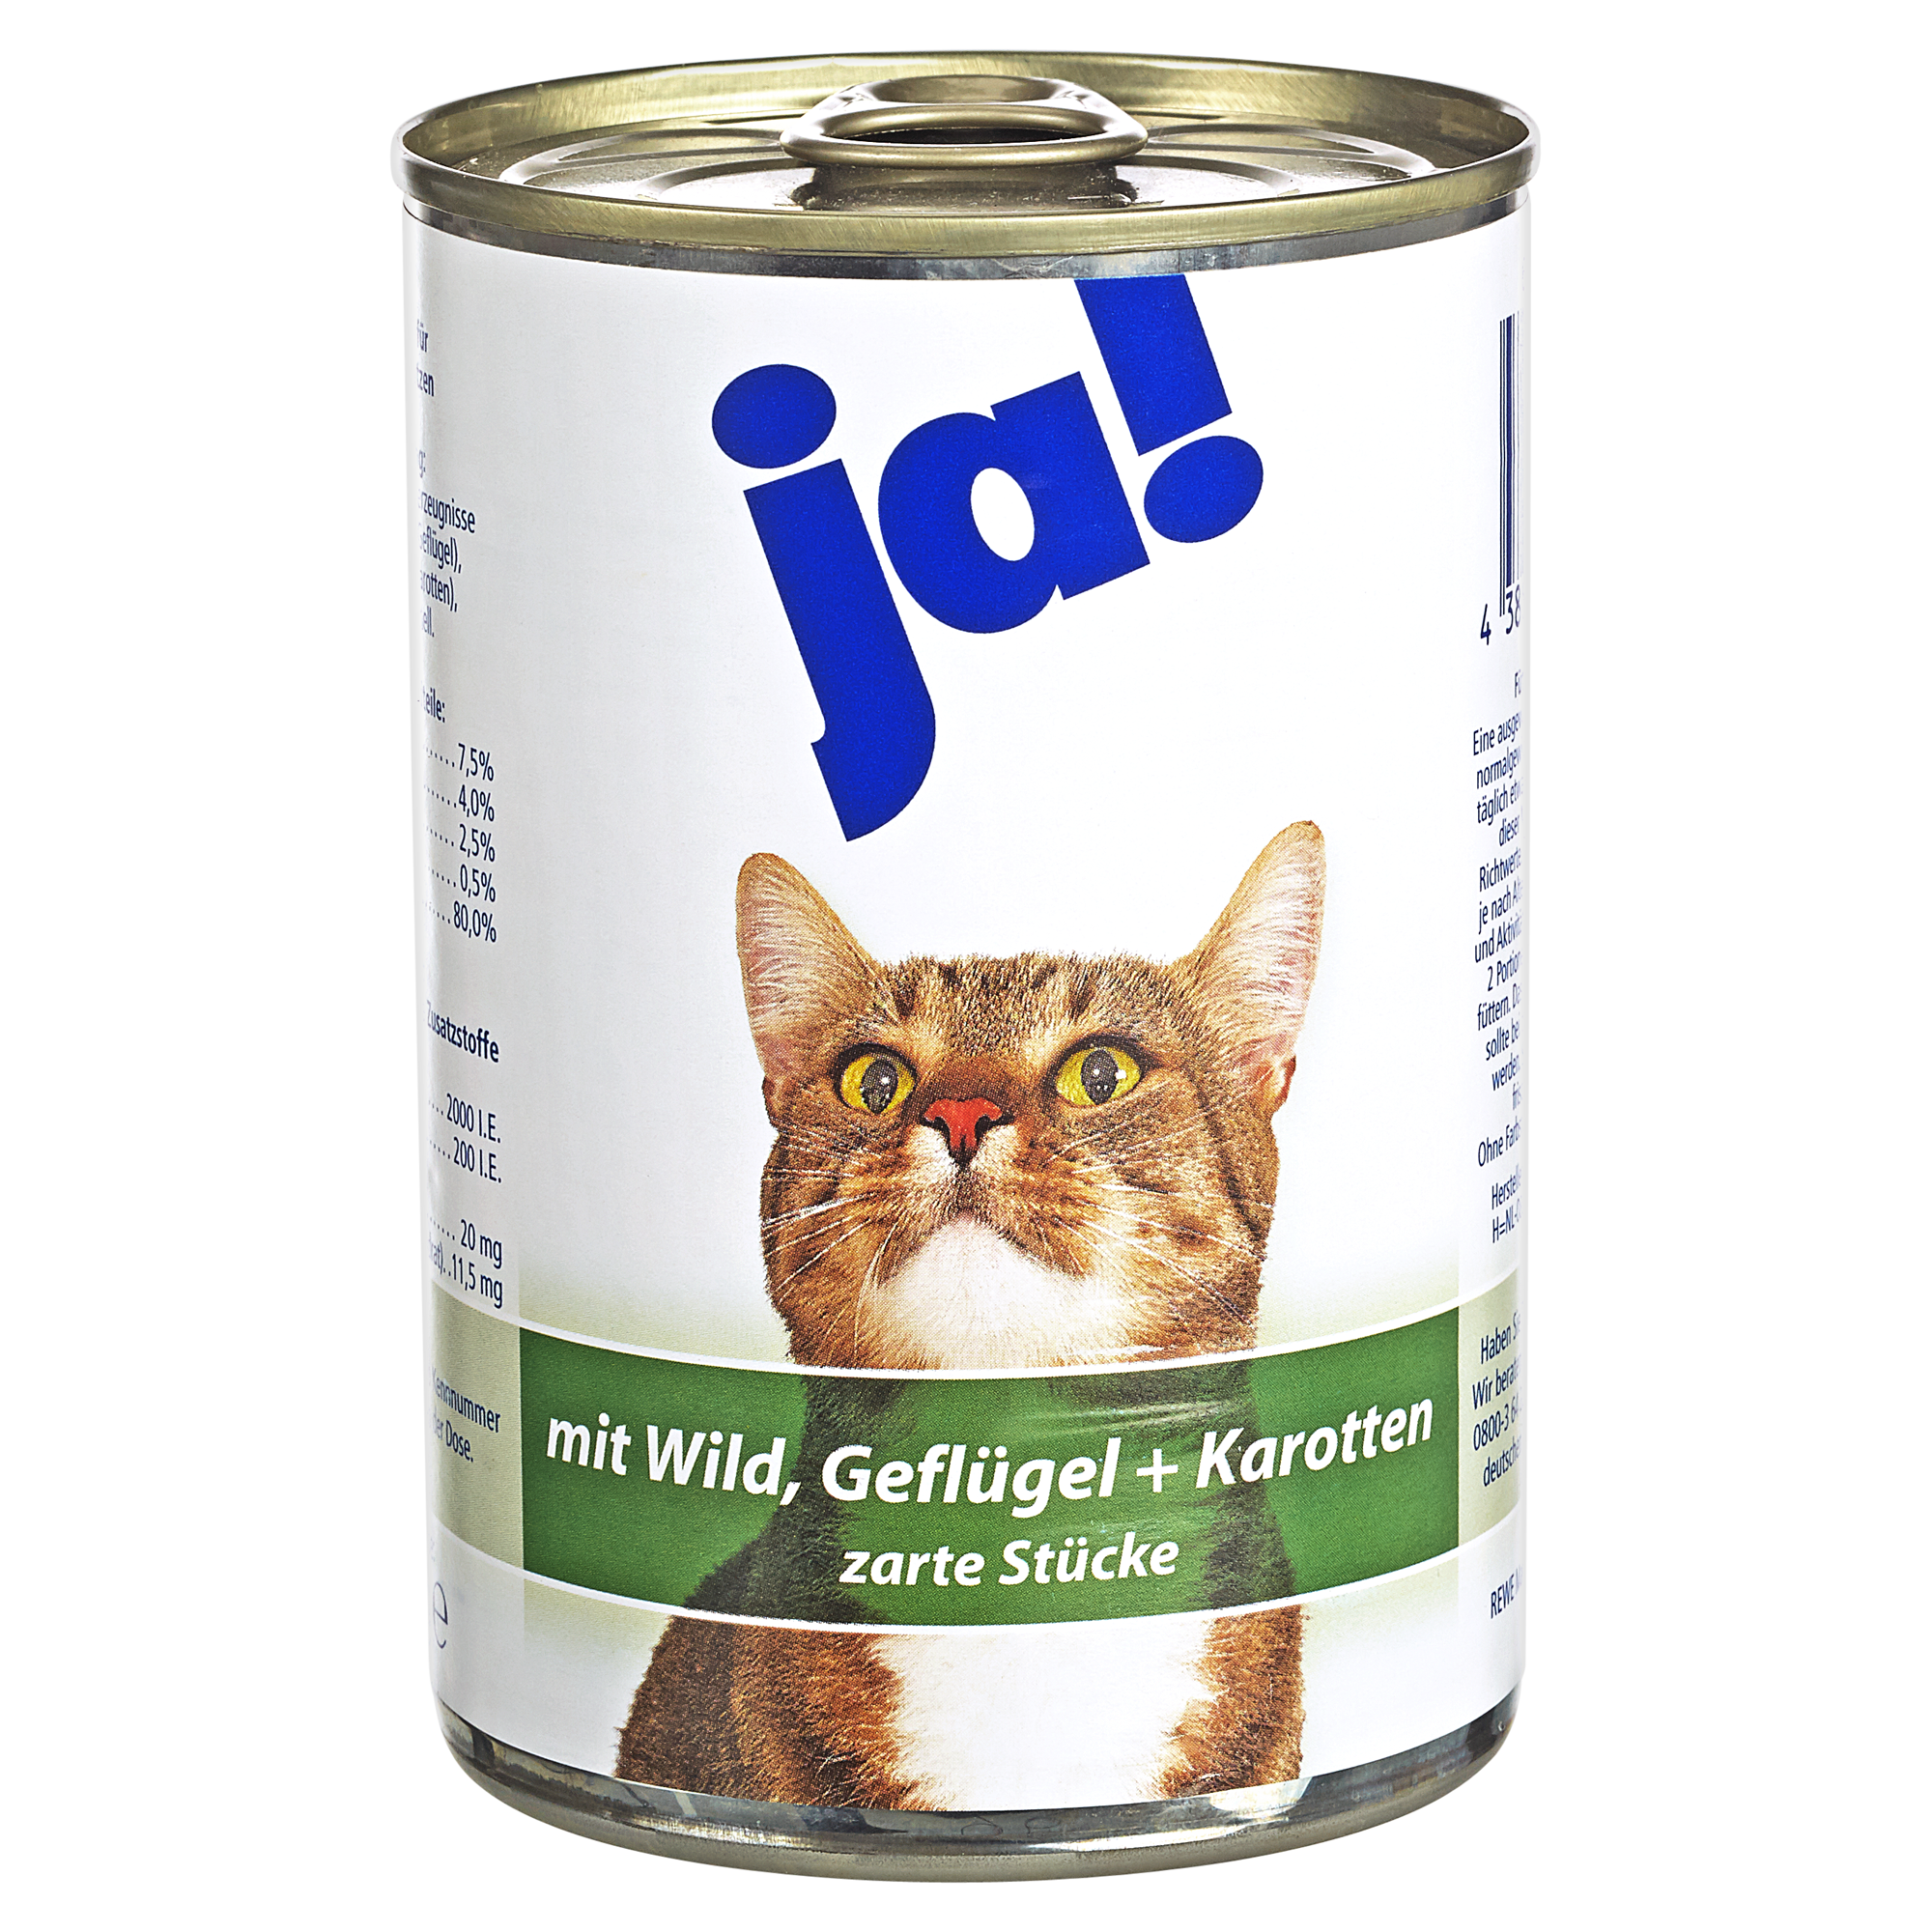 Katzennassfutter mit Wild, Geflügel und Karotte 415 g + product picture